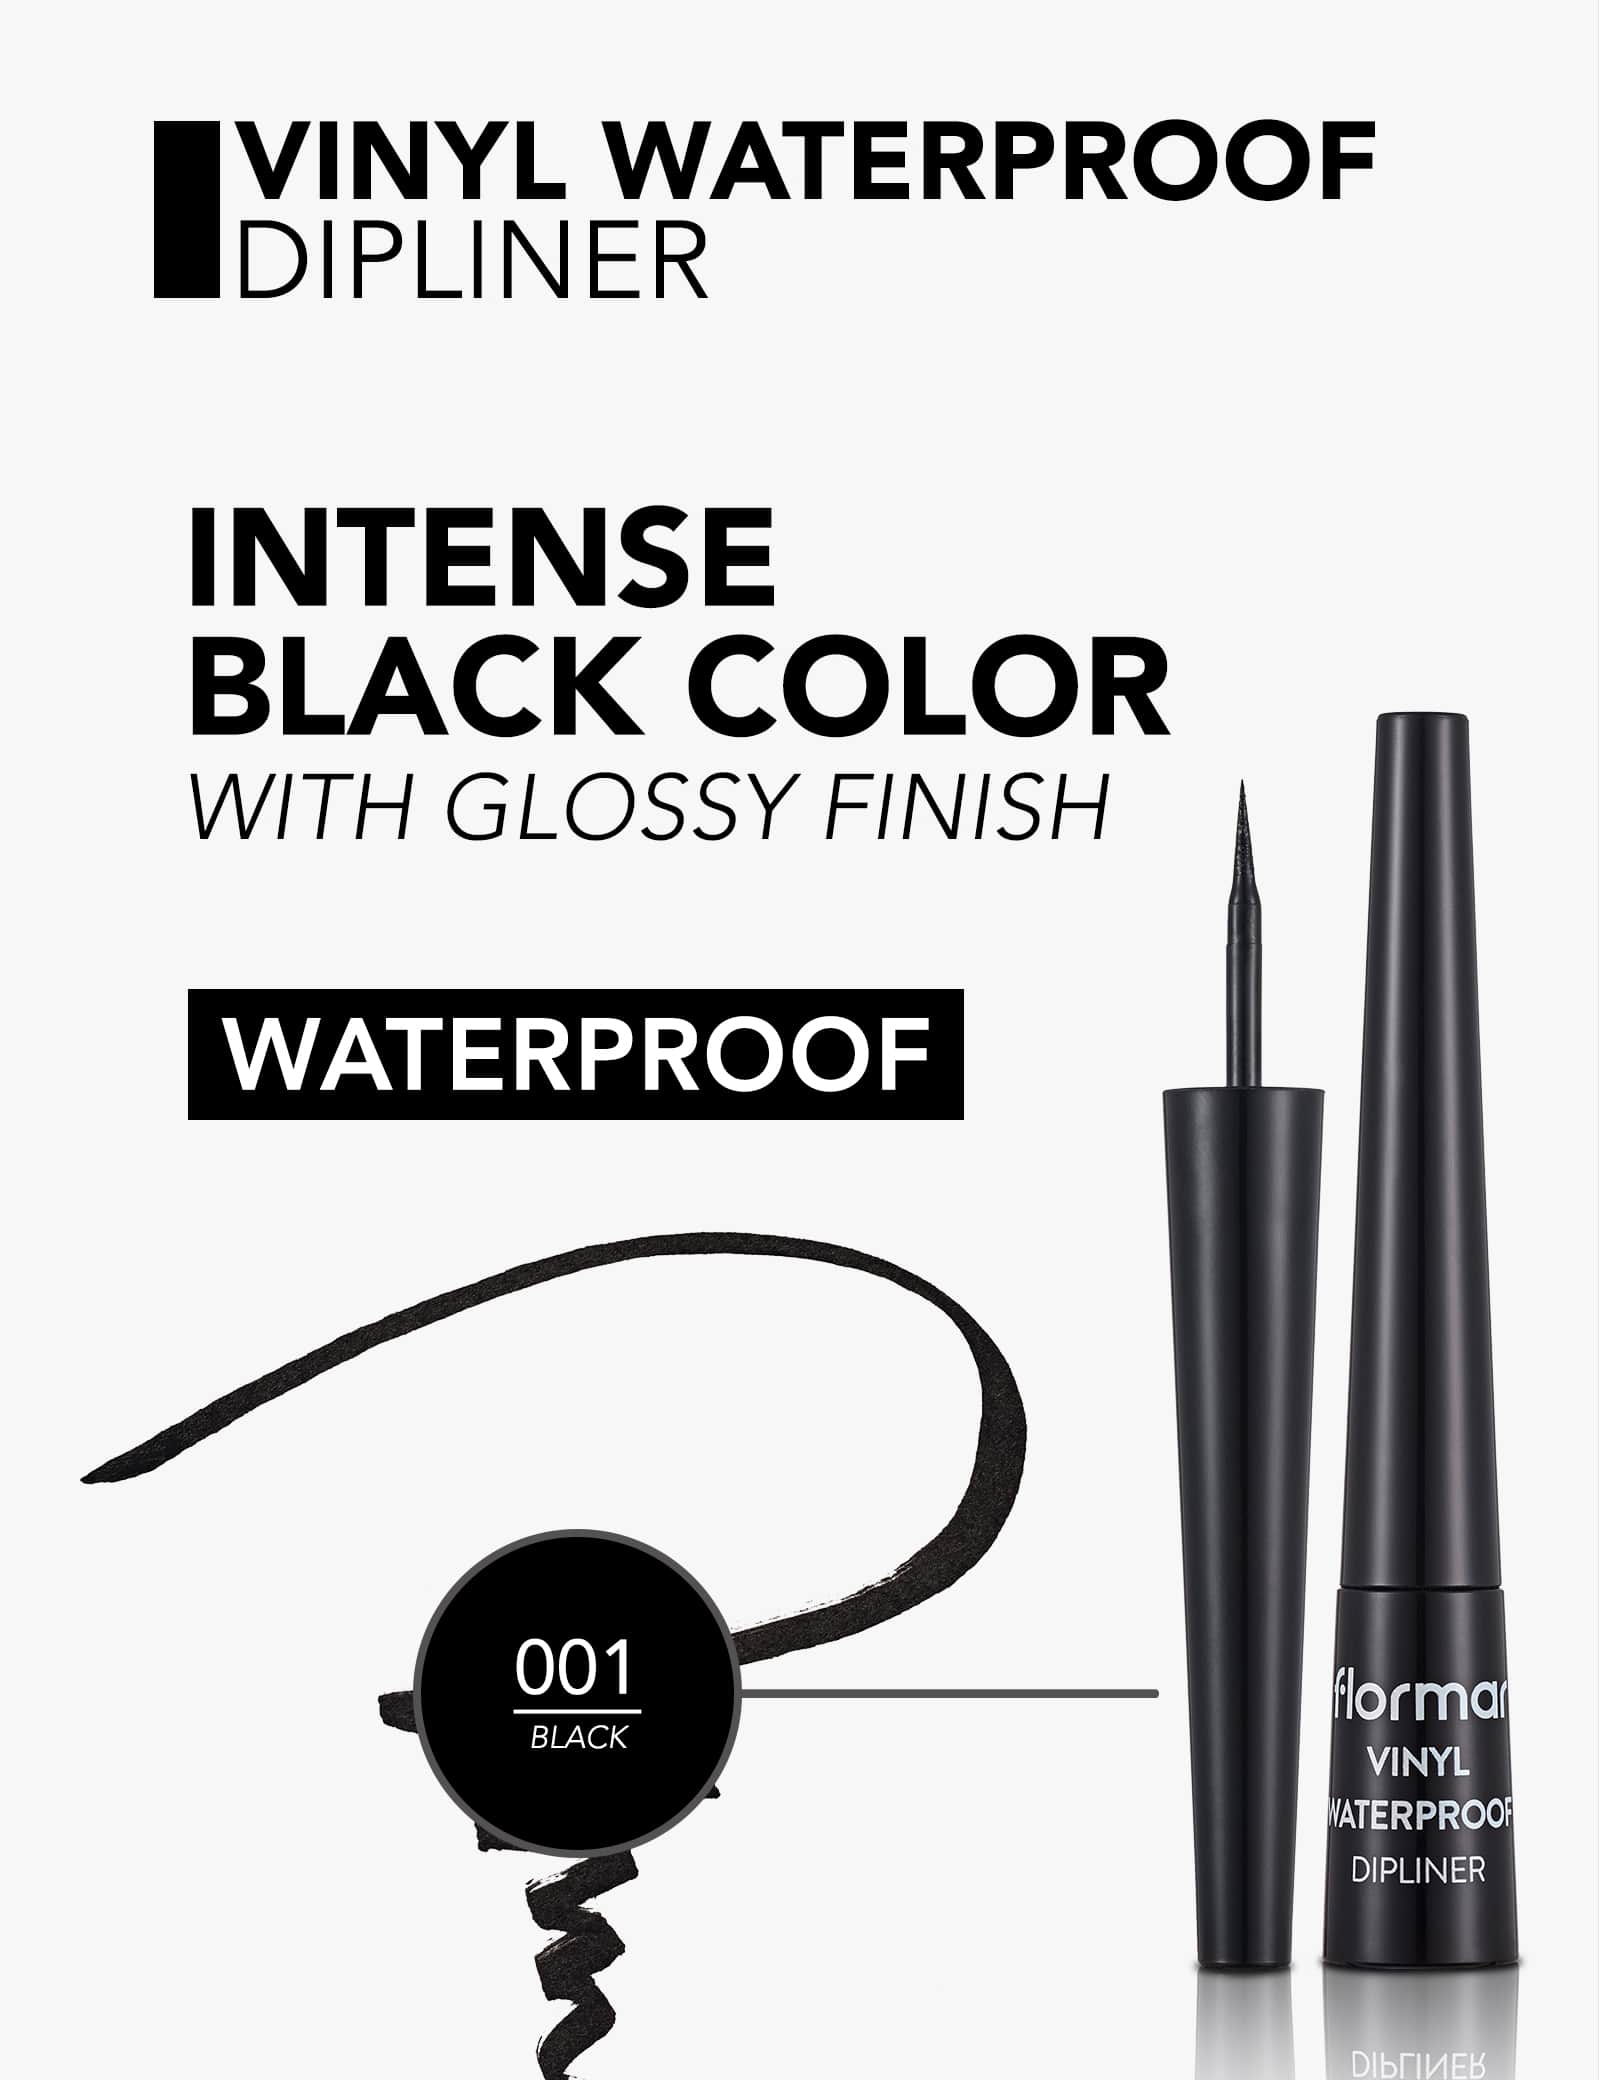 Flormar Vinyl Waterproof Dipliner - Black